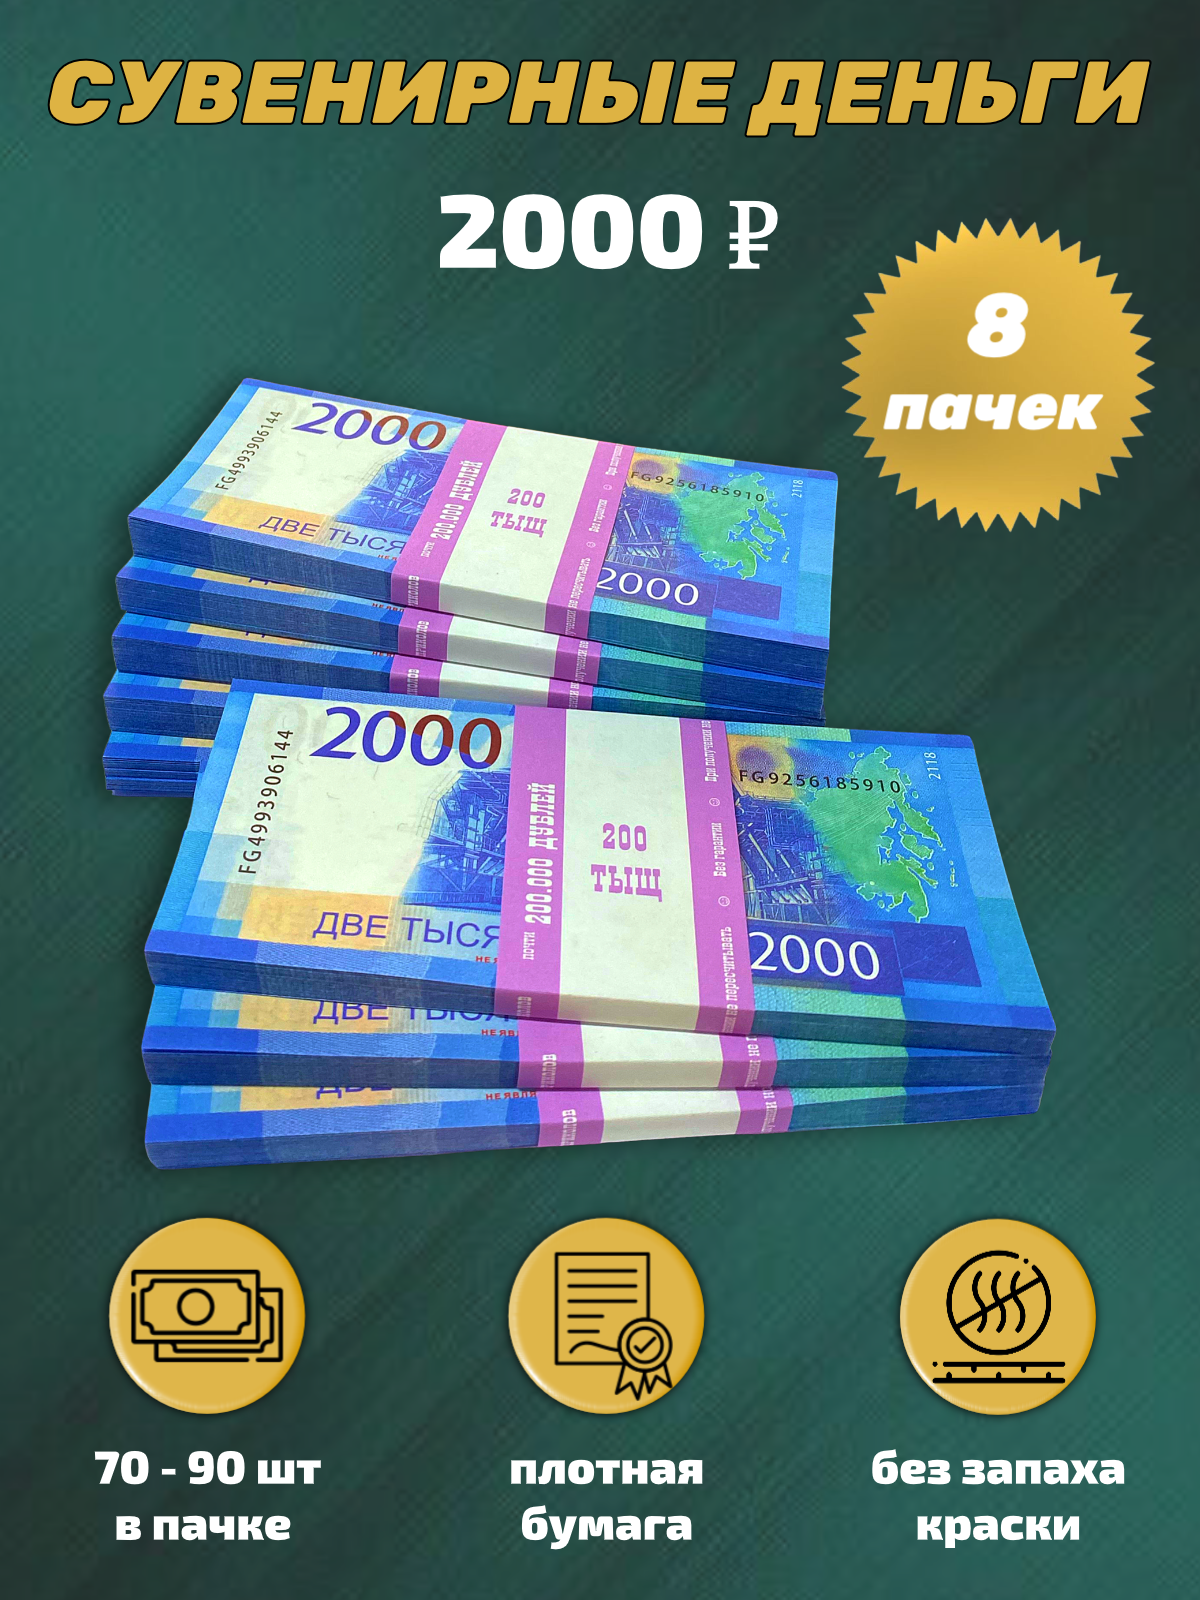 Сувенирные деньги, набор 2000 руб - 8 пачек